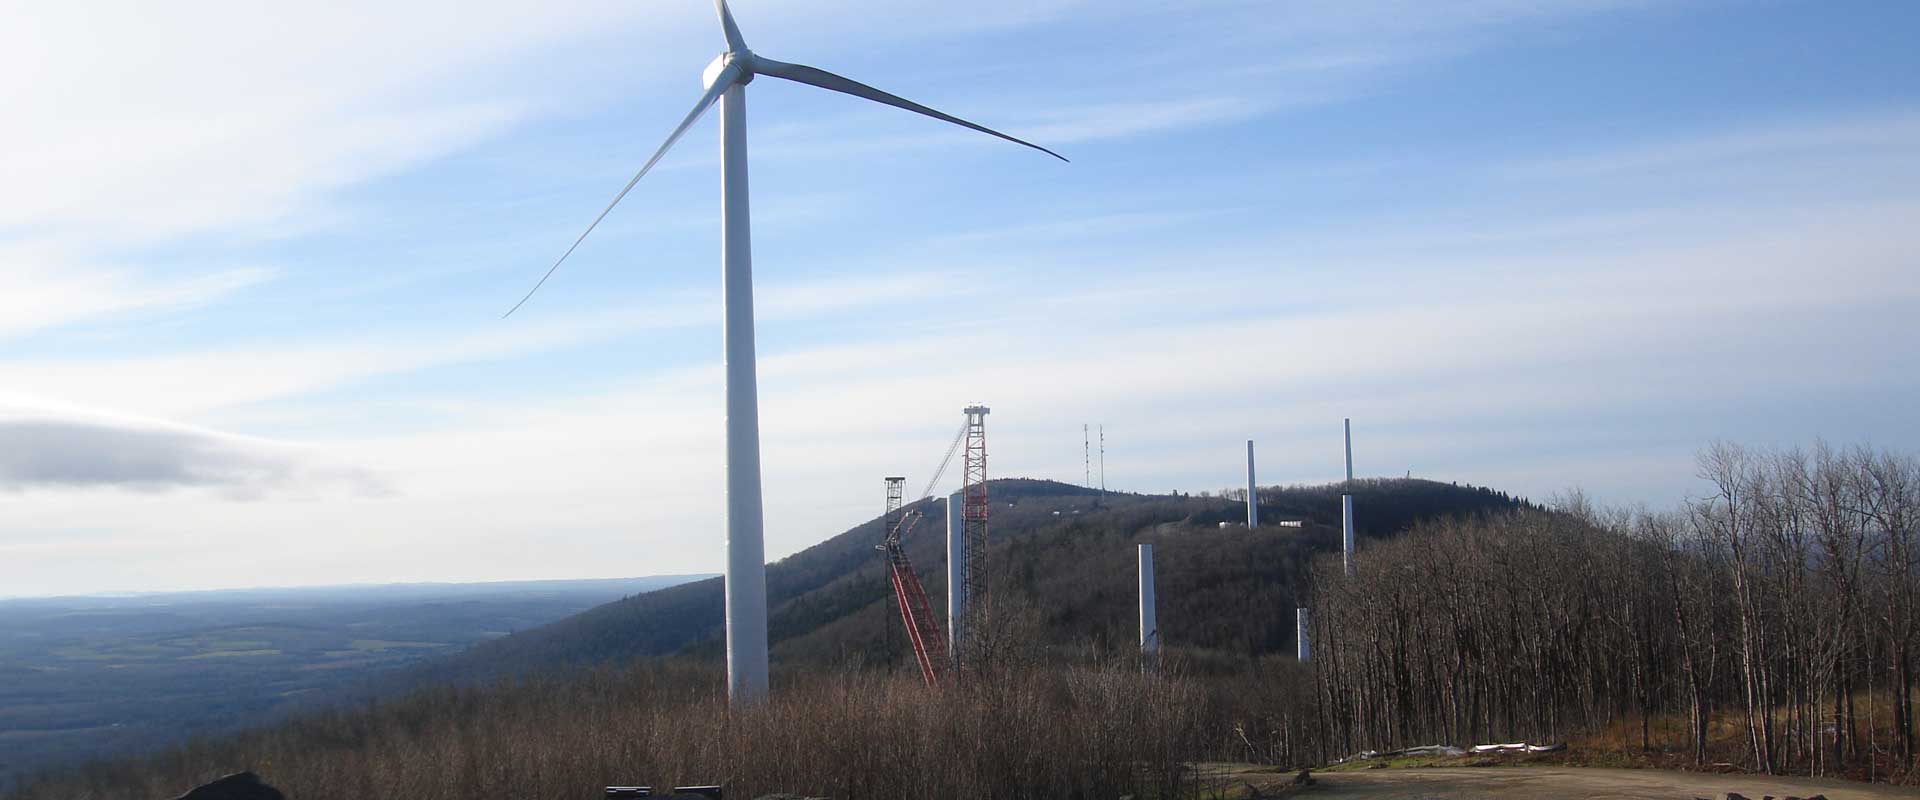 Wind Turbine Project - Mars Hill, ME